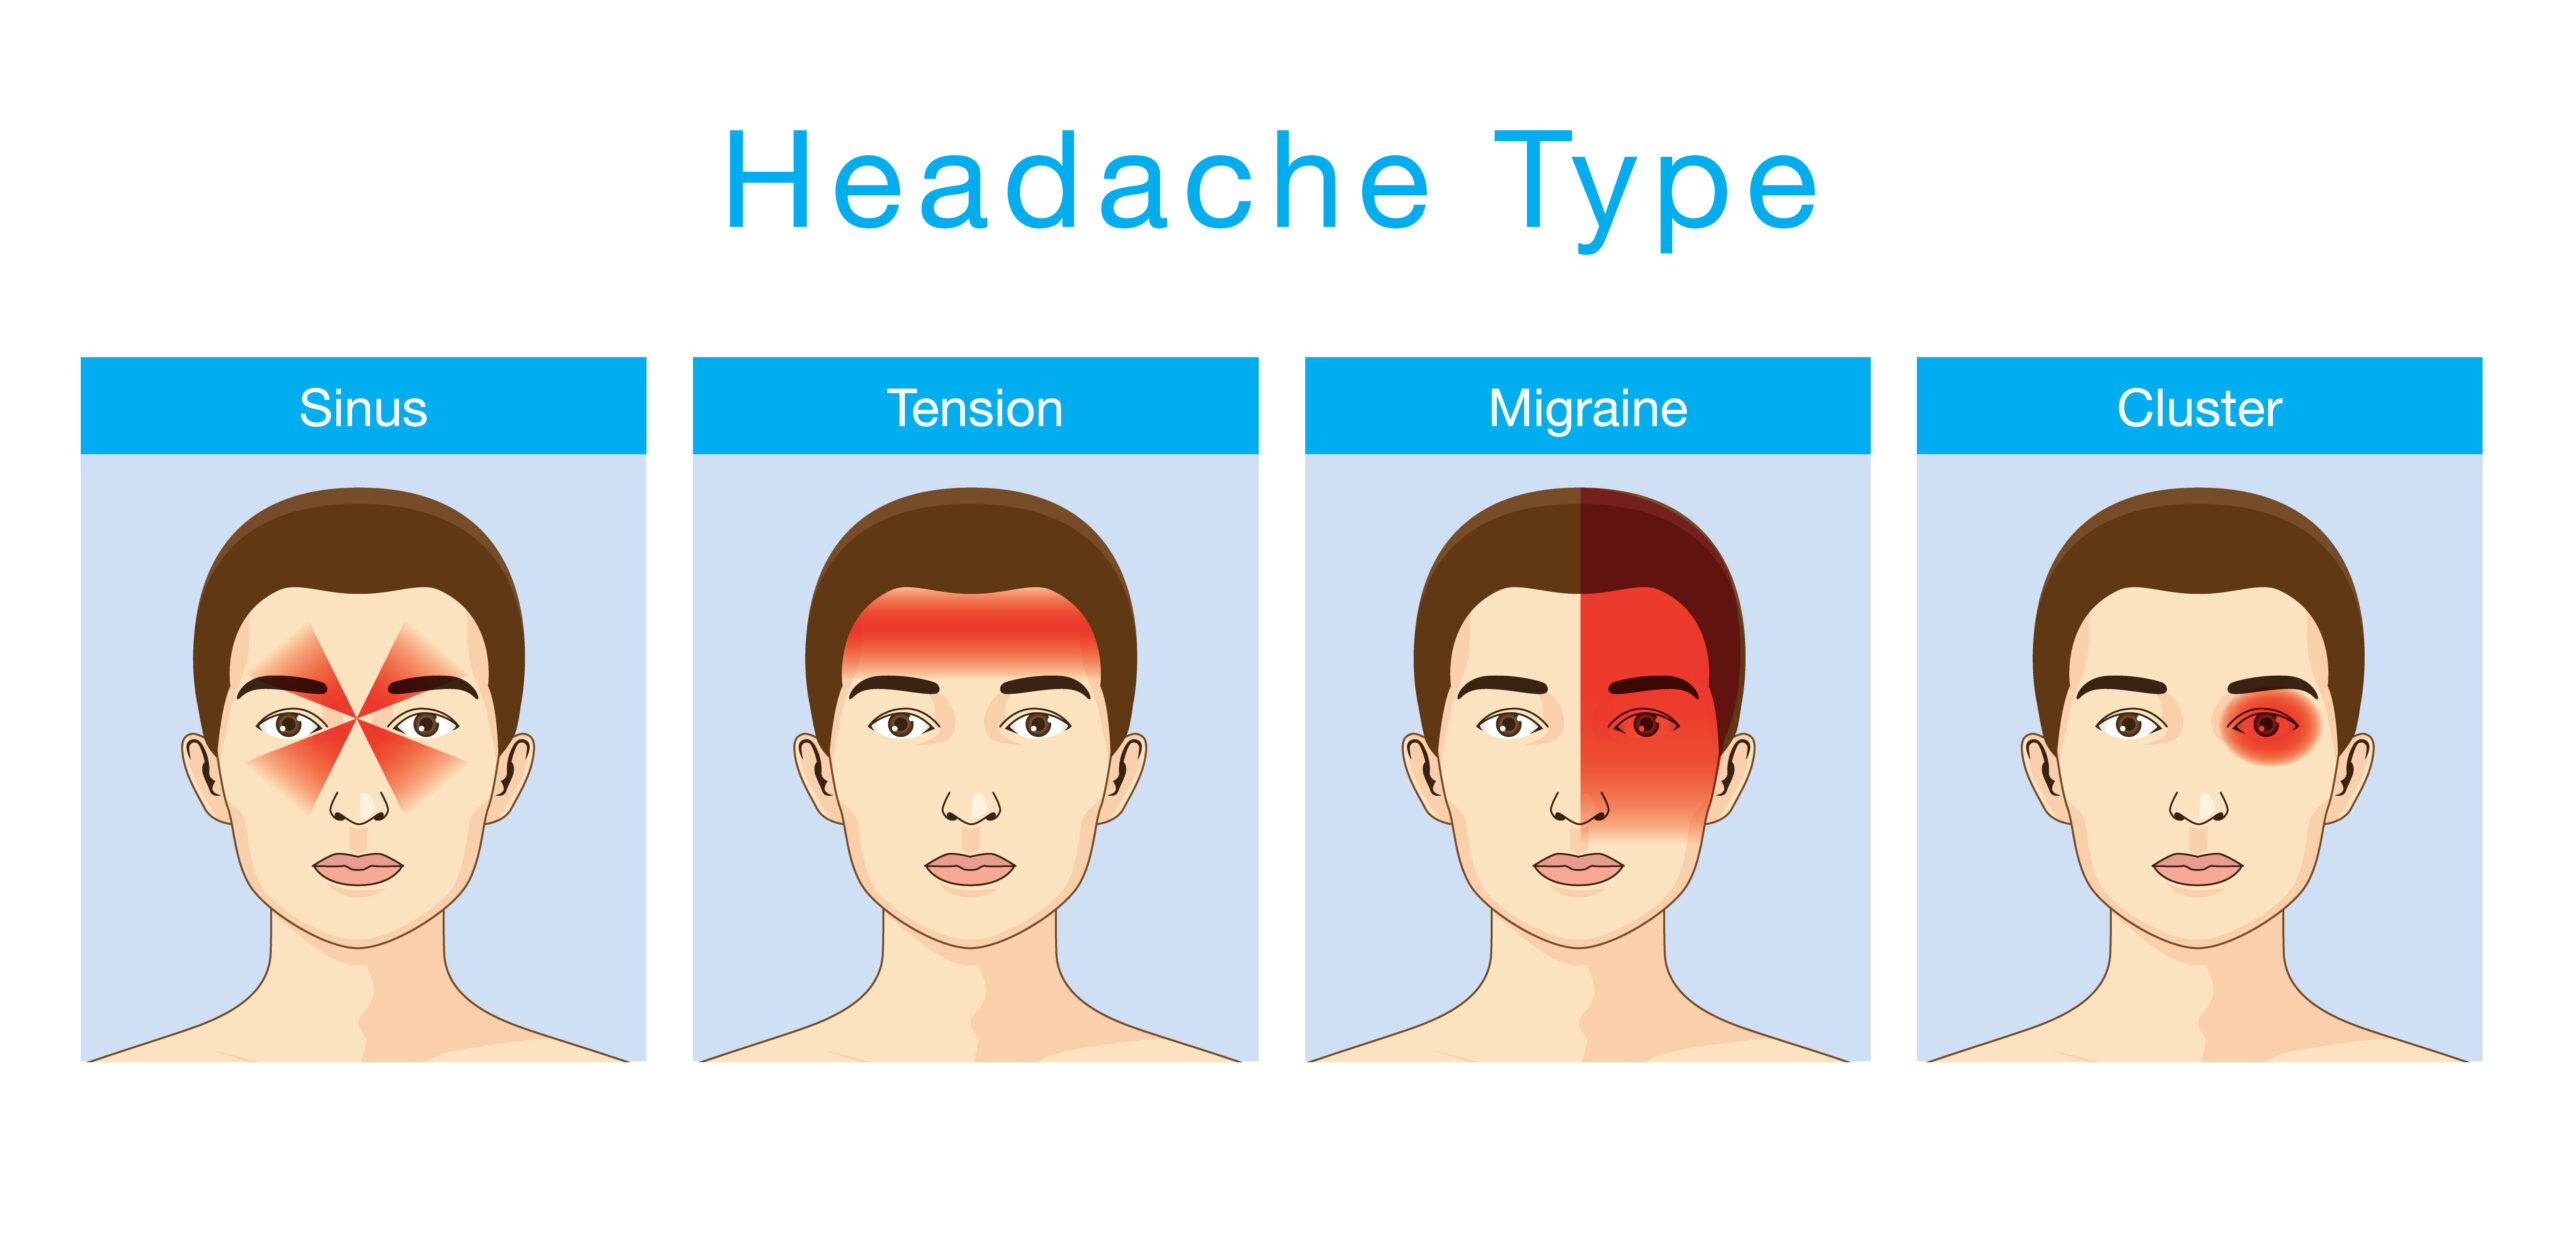 4 Main Types of Headaches